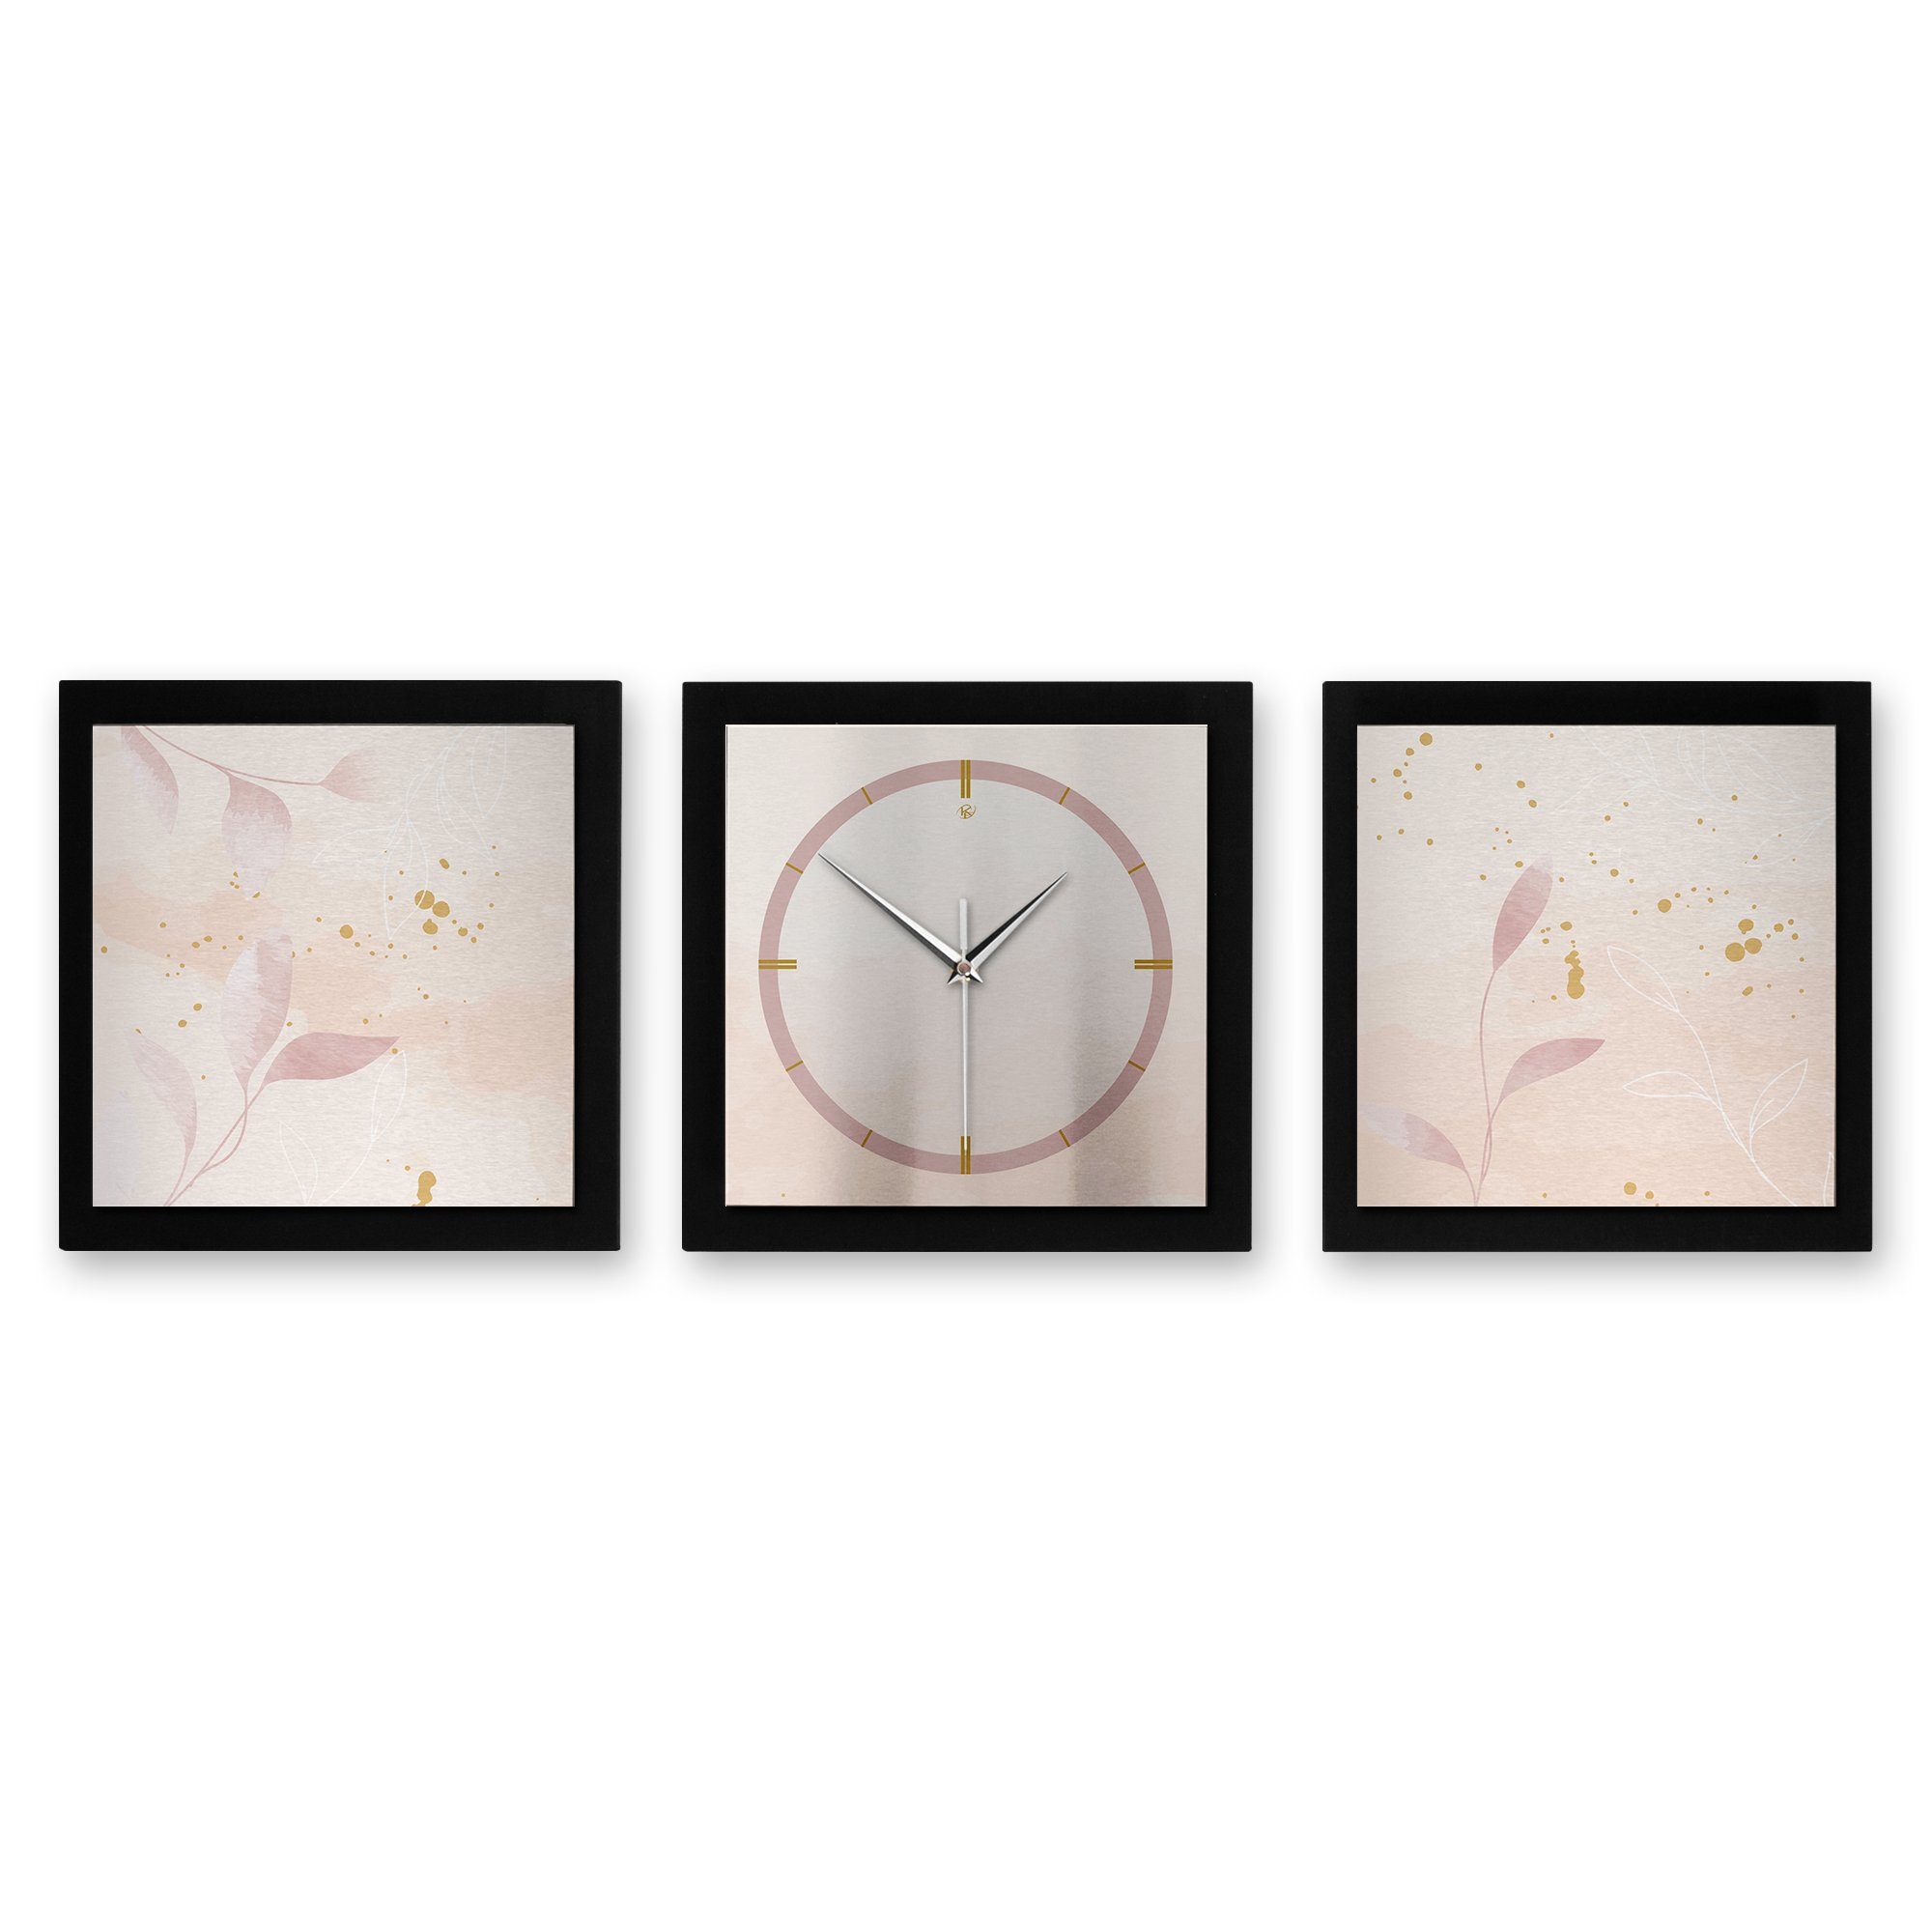 Kreative Feder Wanduhr Pale Pink (ohne Ticken; Funk- oder Quarzuhrwerk; elegant, außergewöhnlich, modern) groß (150x50cm) | Wanduhren